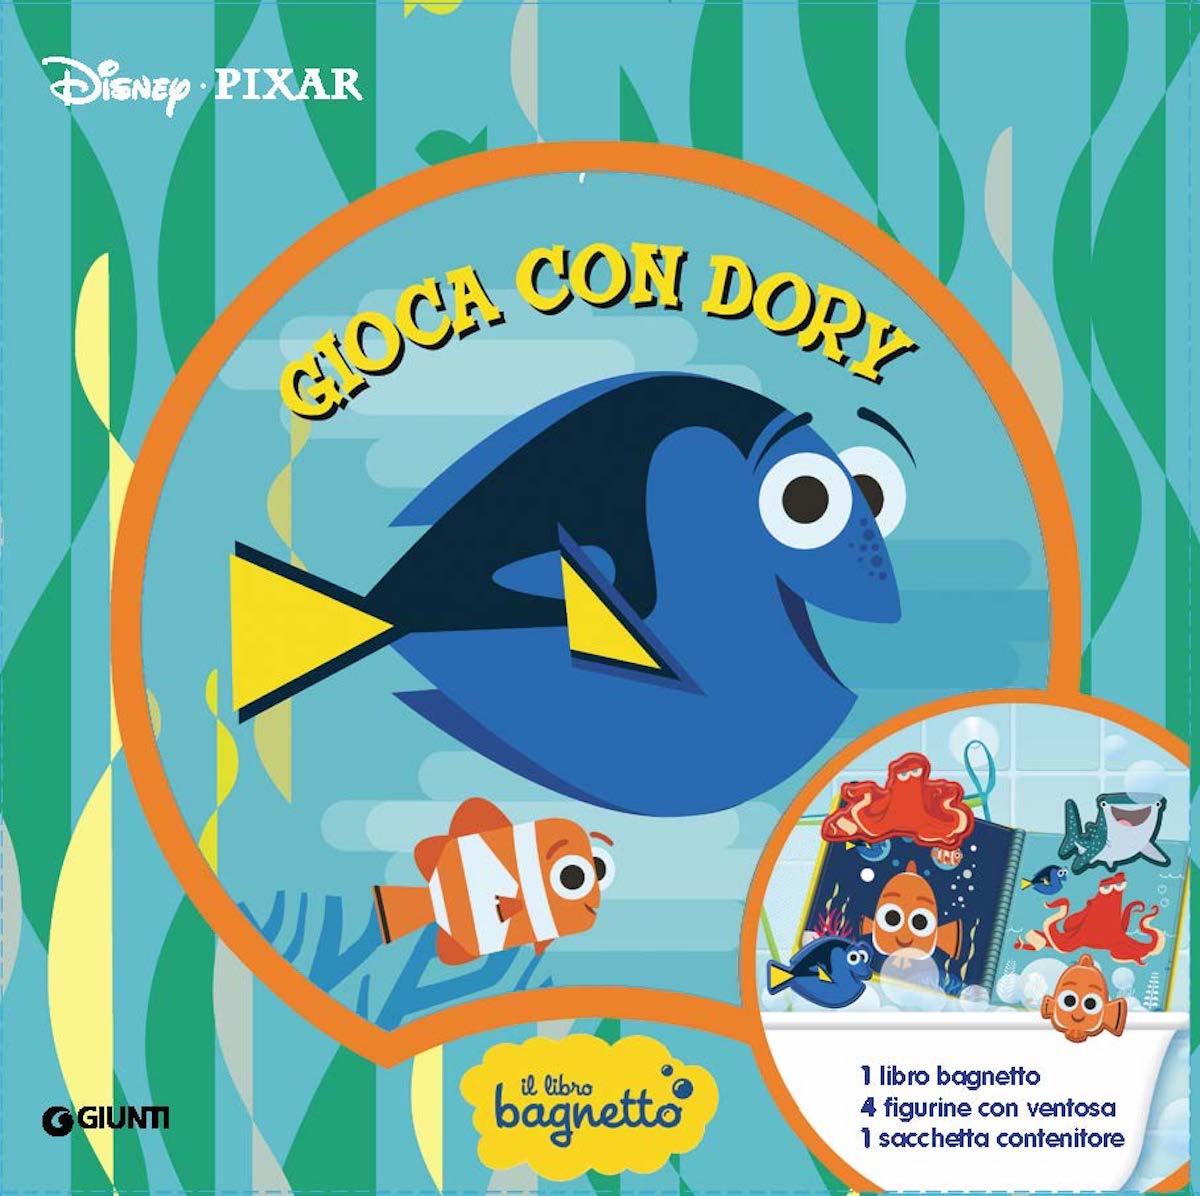 Libro bagnetto Gioca con Dory - Disney/Pixar. 1 libro bagnetto, 4 figurine con ventosa, 1 sacchetta contenitore